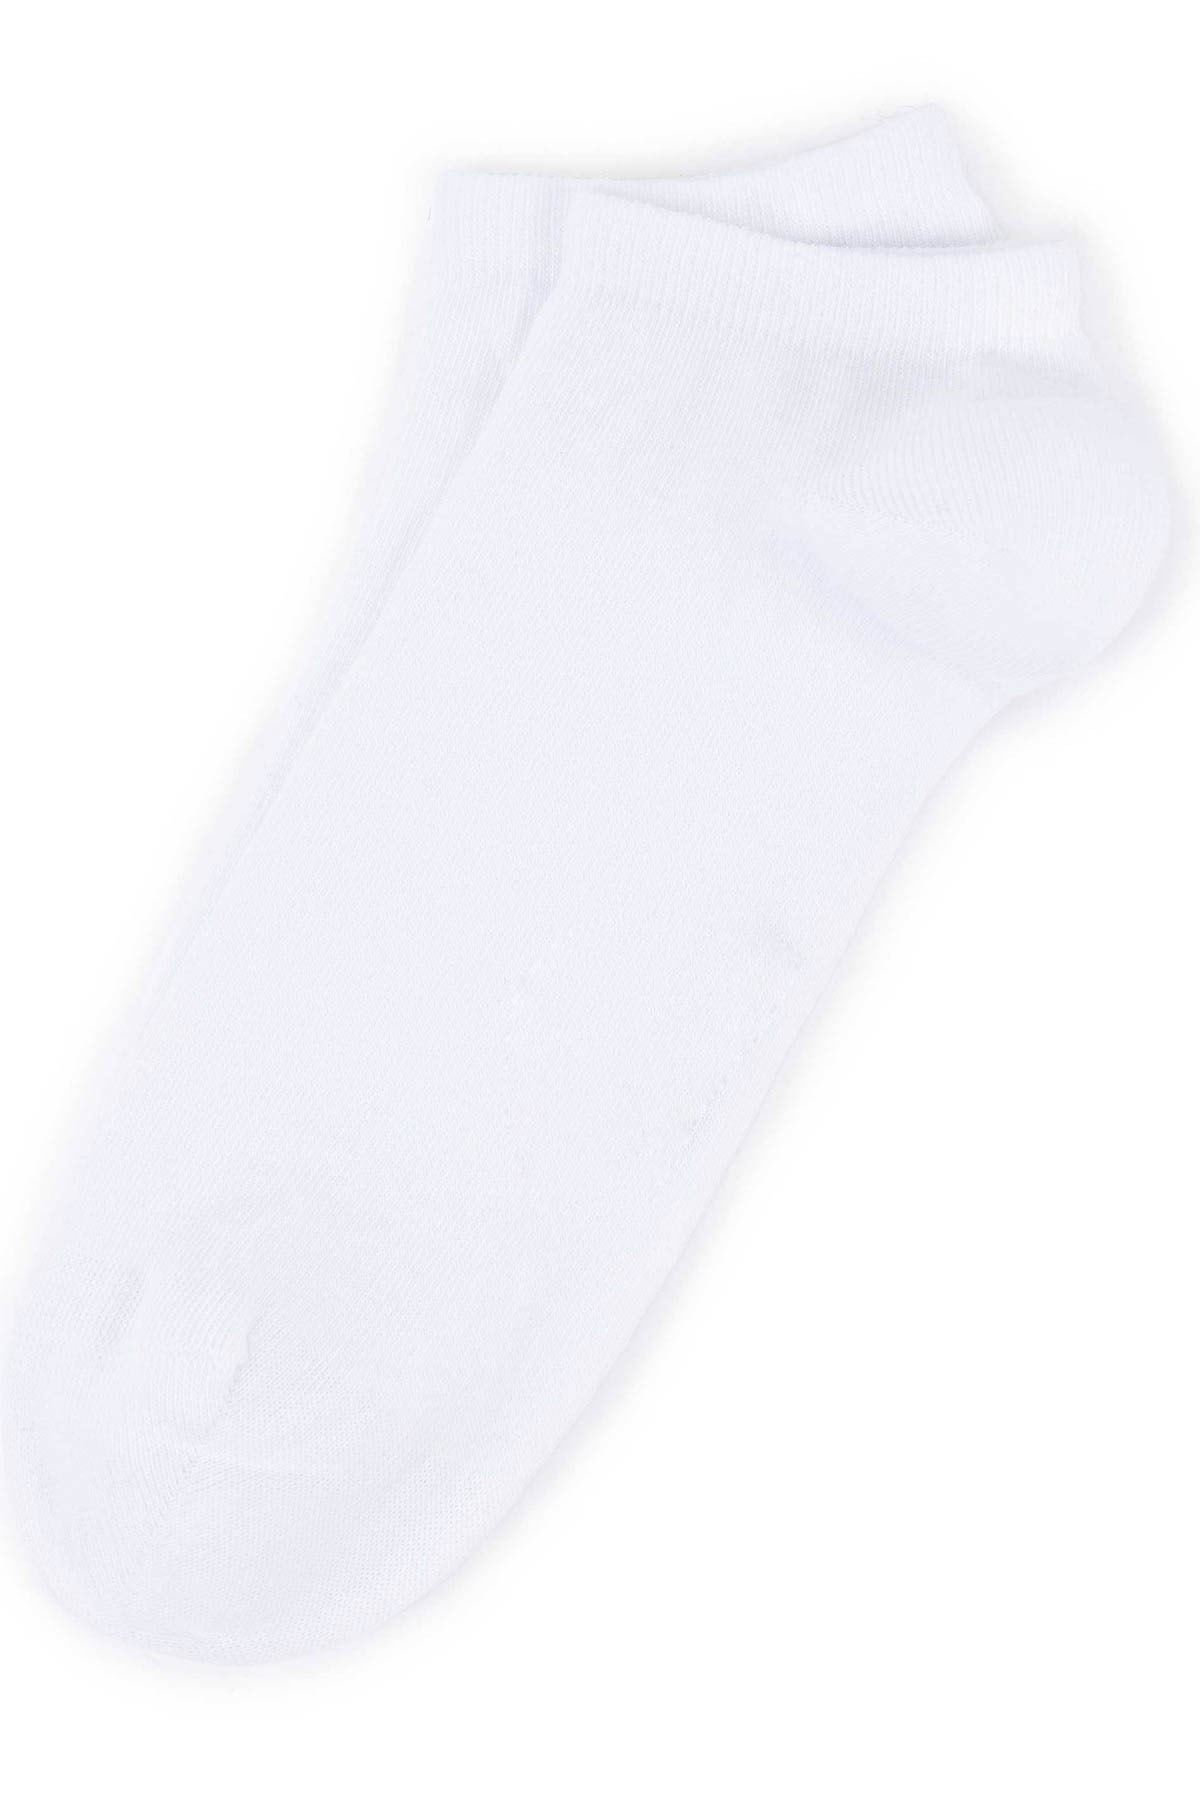  5 Adet Beyaz Erkek Patik Çorap (40-44)